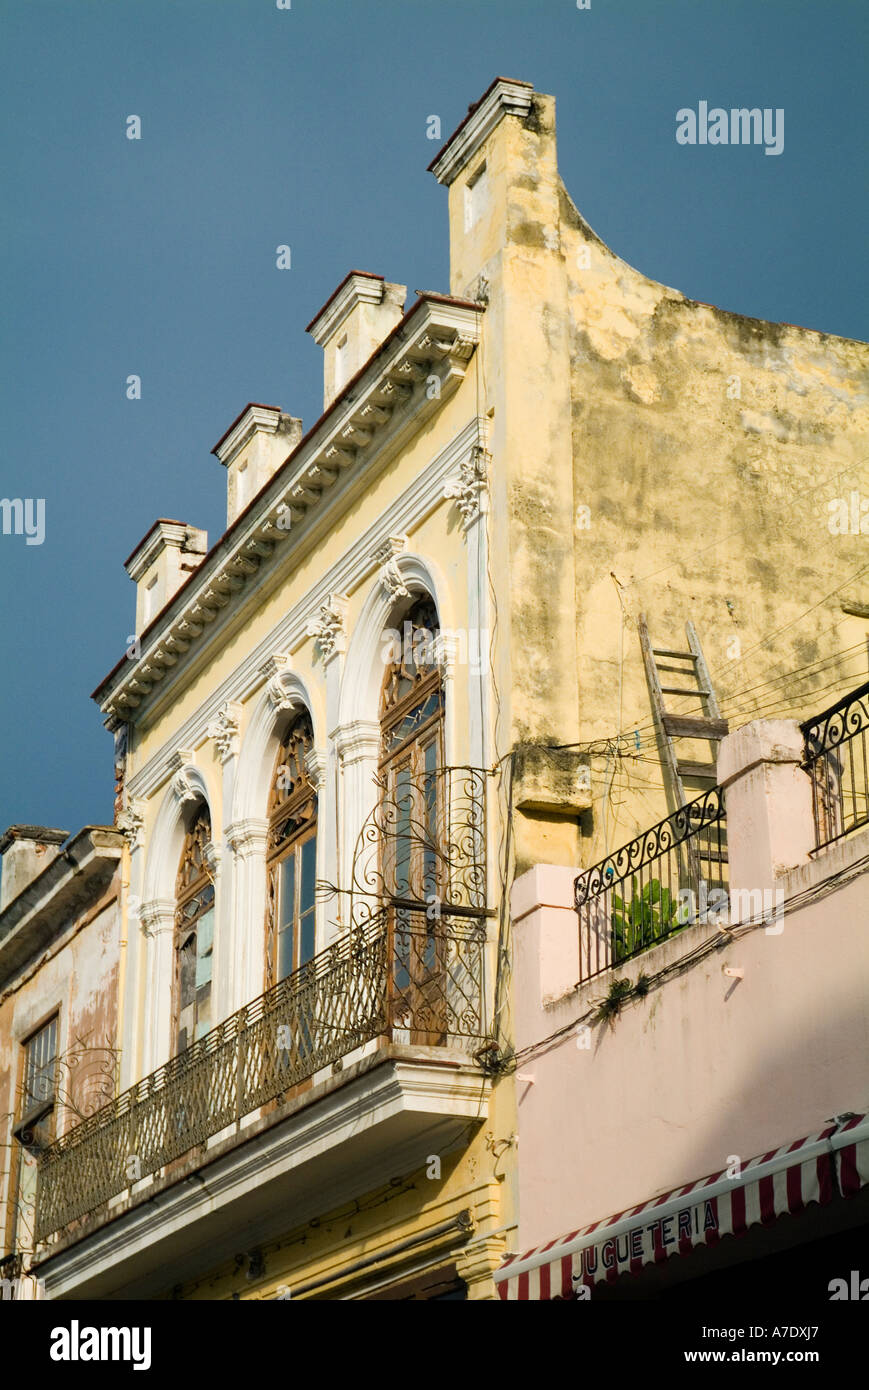 Fassade und Balkon von einem alten Gebäude in Obispo Straße in Havanna, Kuba. Stockfoto